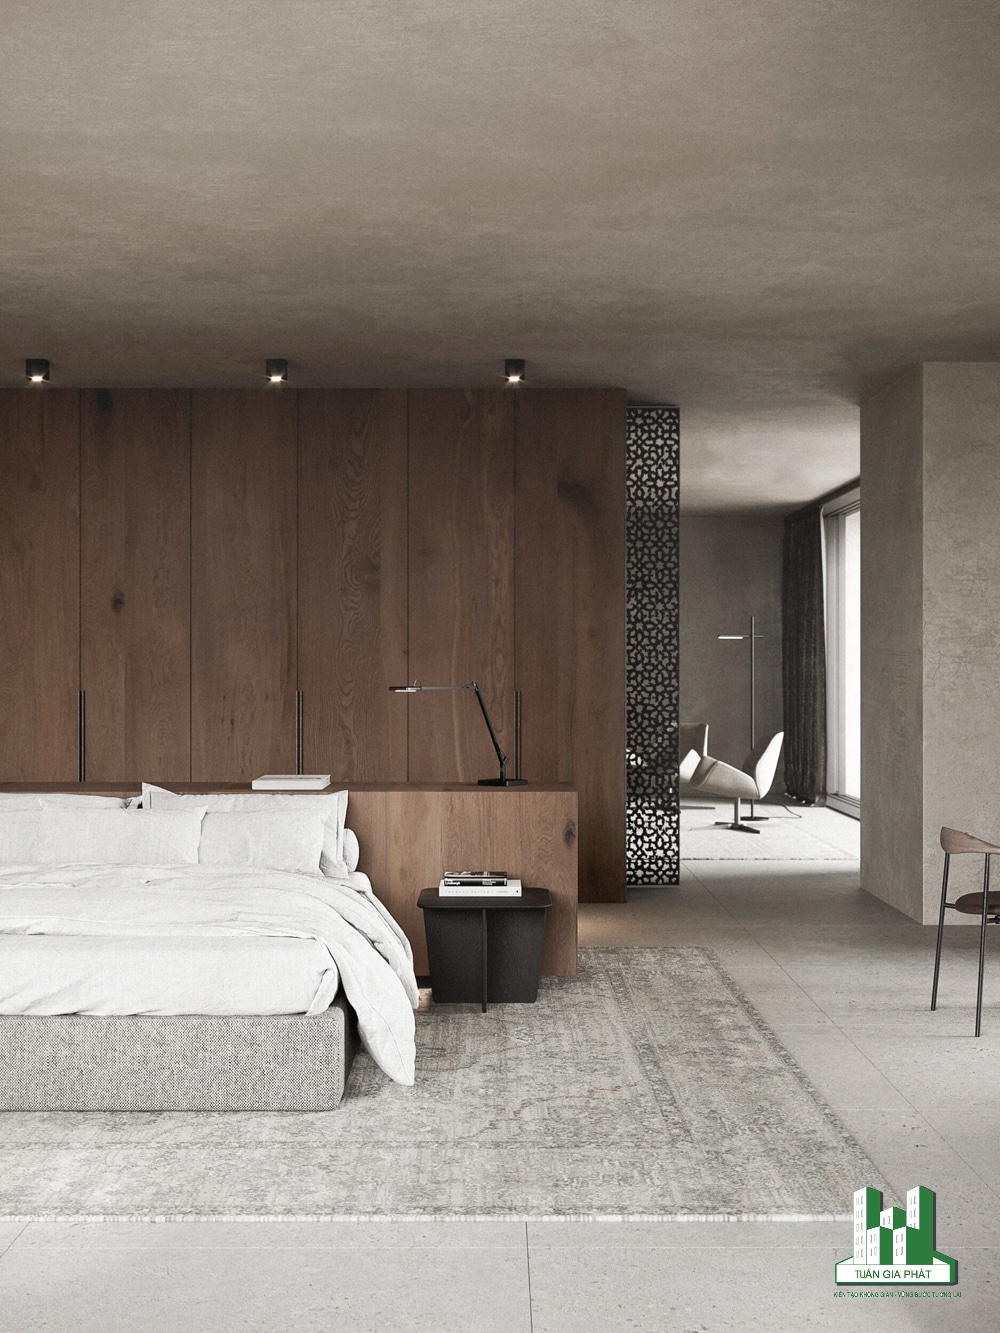 Phòng ngủ Zen hiện đại với bức tường nổi bật bằng gỗ, giường bọc nệm với bộ đồ giường màu trắng, kệ đầu giường bằng kim loại và đèn cùng tone màu đen.